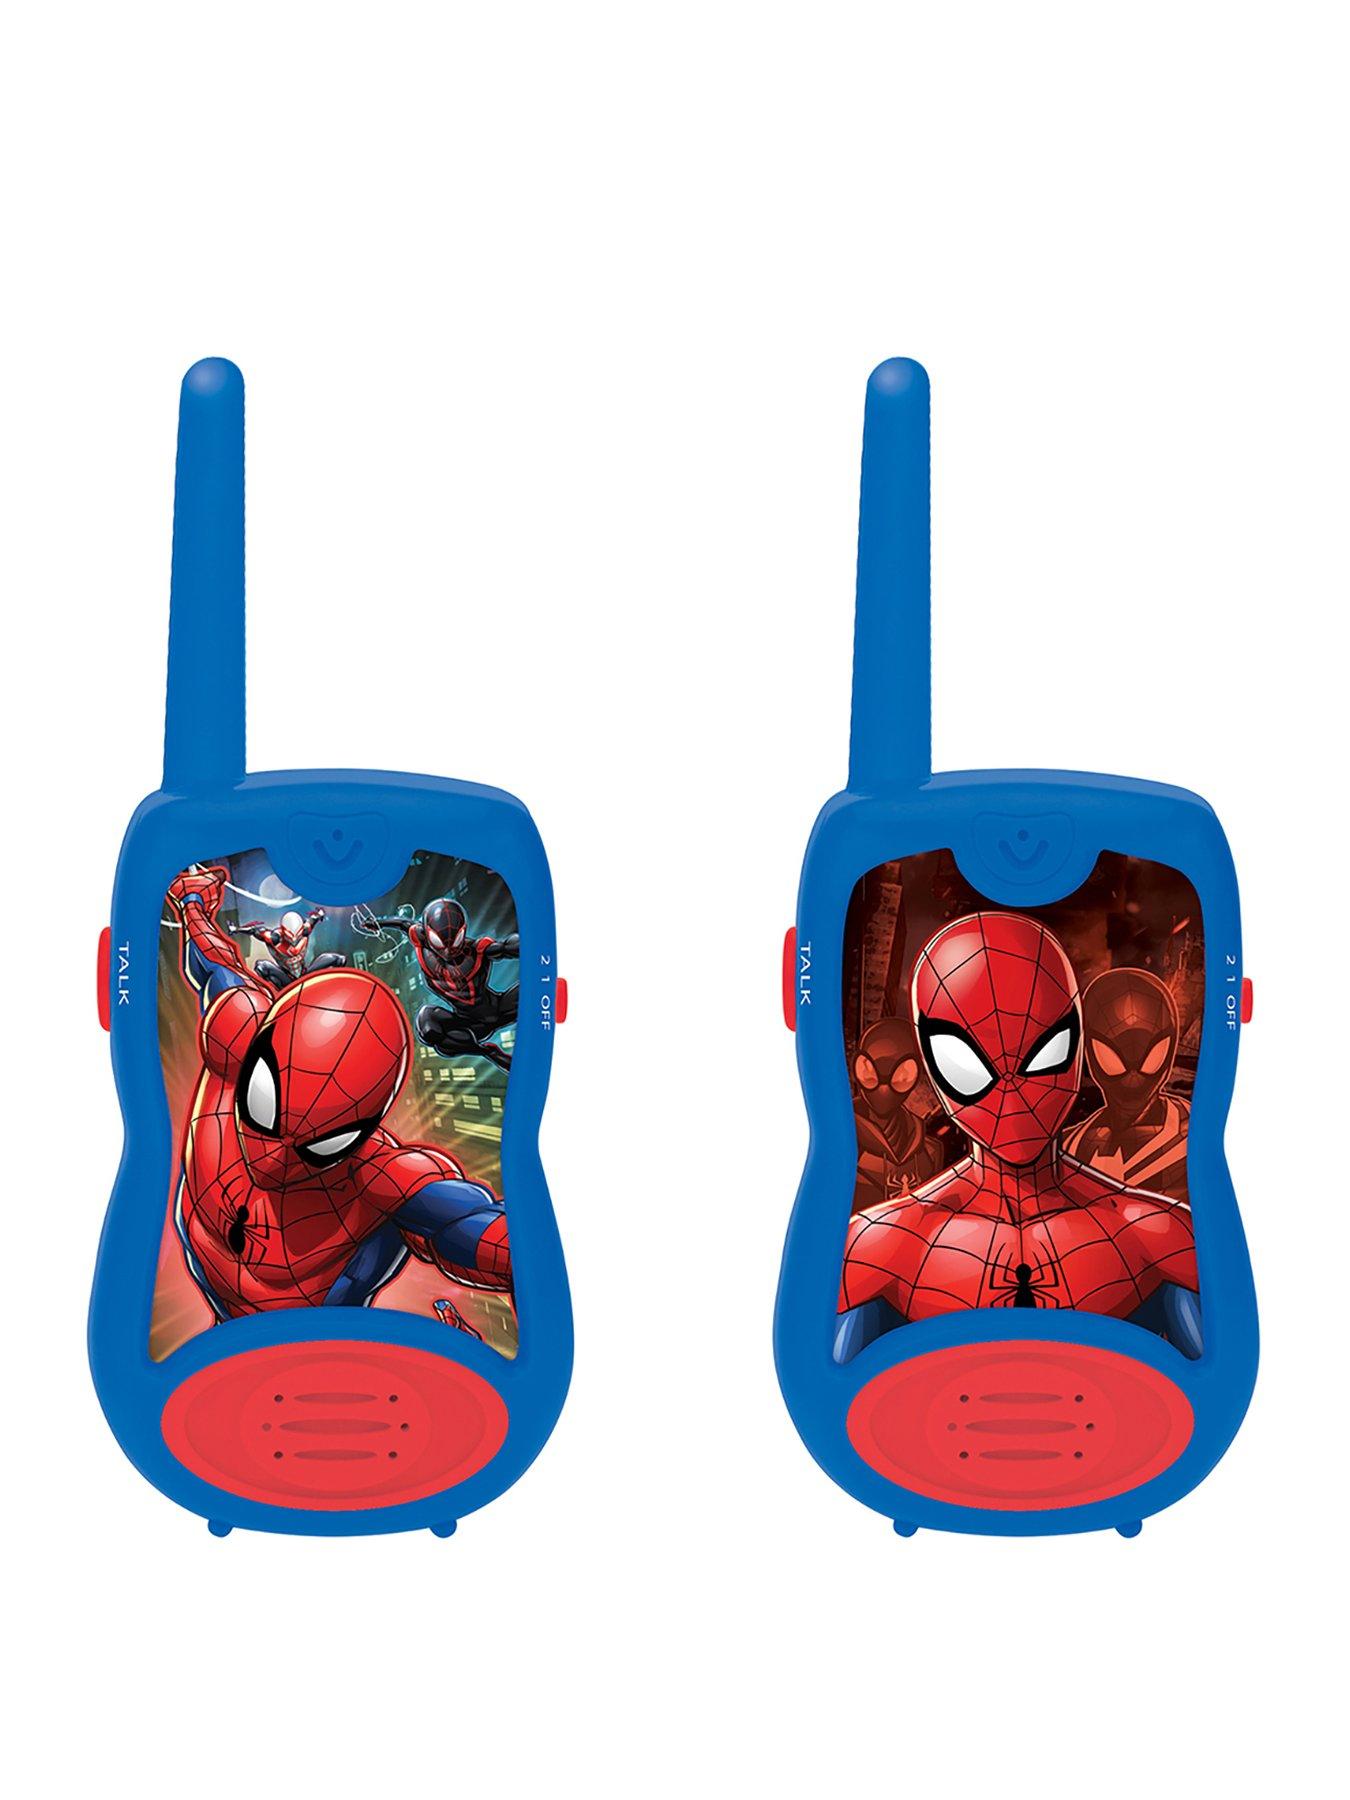 Kart In Box, Spiderman Toys, Spider Man Toy, Spider-man Toys, Crawling Spiderman  Toys -, Spiderman Toys, Spider Man Toy, Spider-man Toys